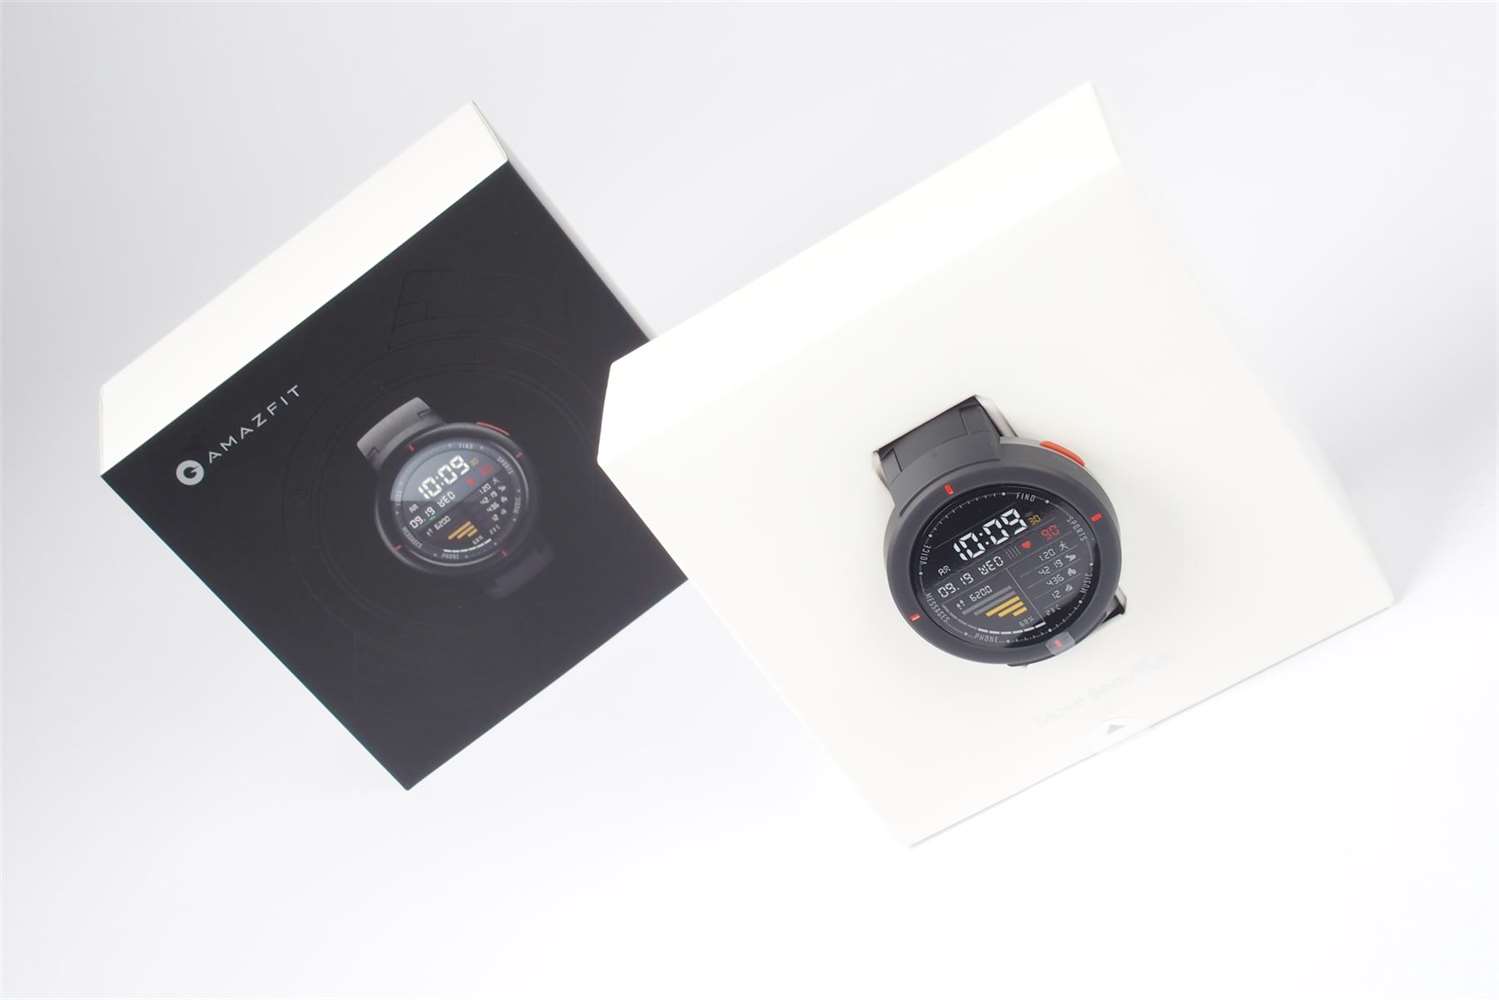 Galerie - Xiaomi začíná prodávat nové chytré hodinky. Amazfit Verge přidávají funkce a snižují cenu – MobilMania.cz